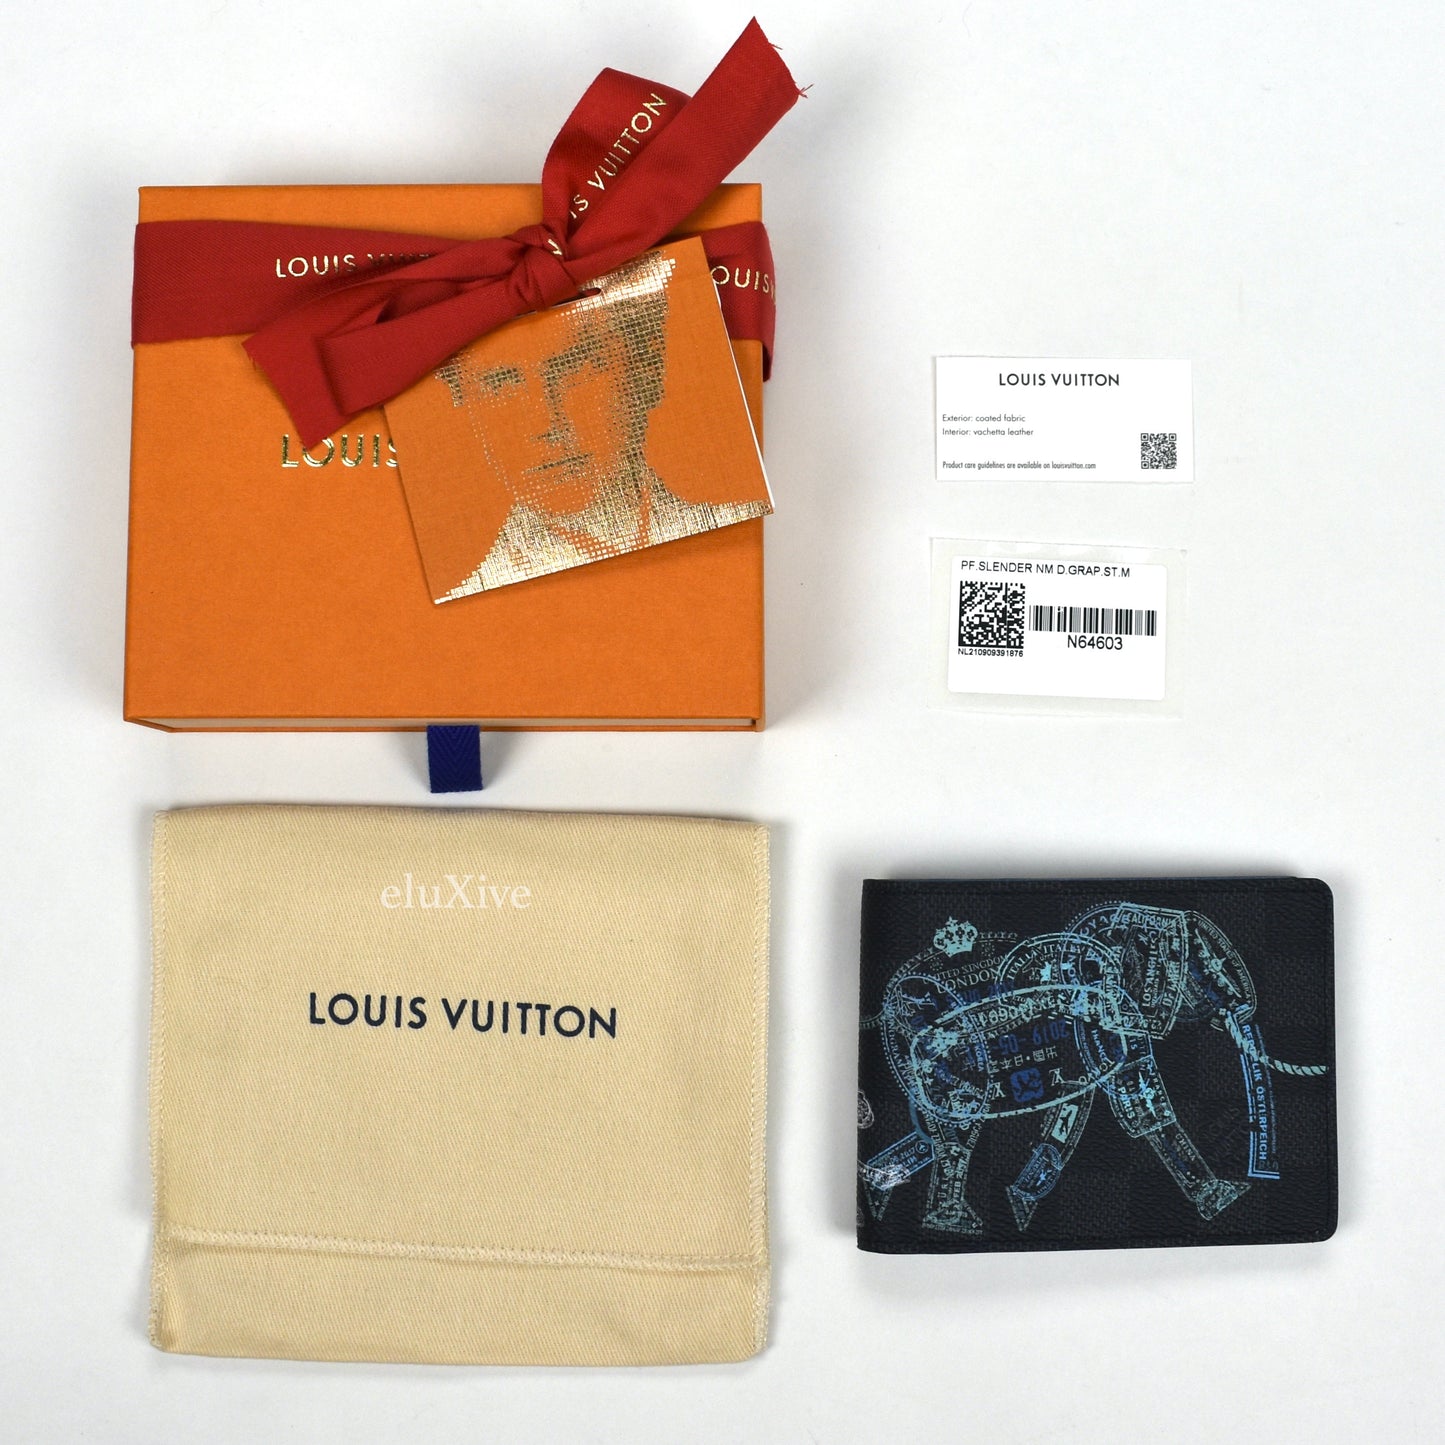 LOUIS VUITTON PASSPORT Cover Unboxing 